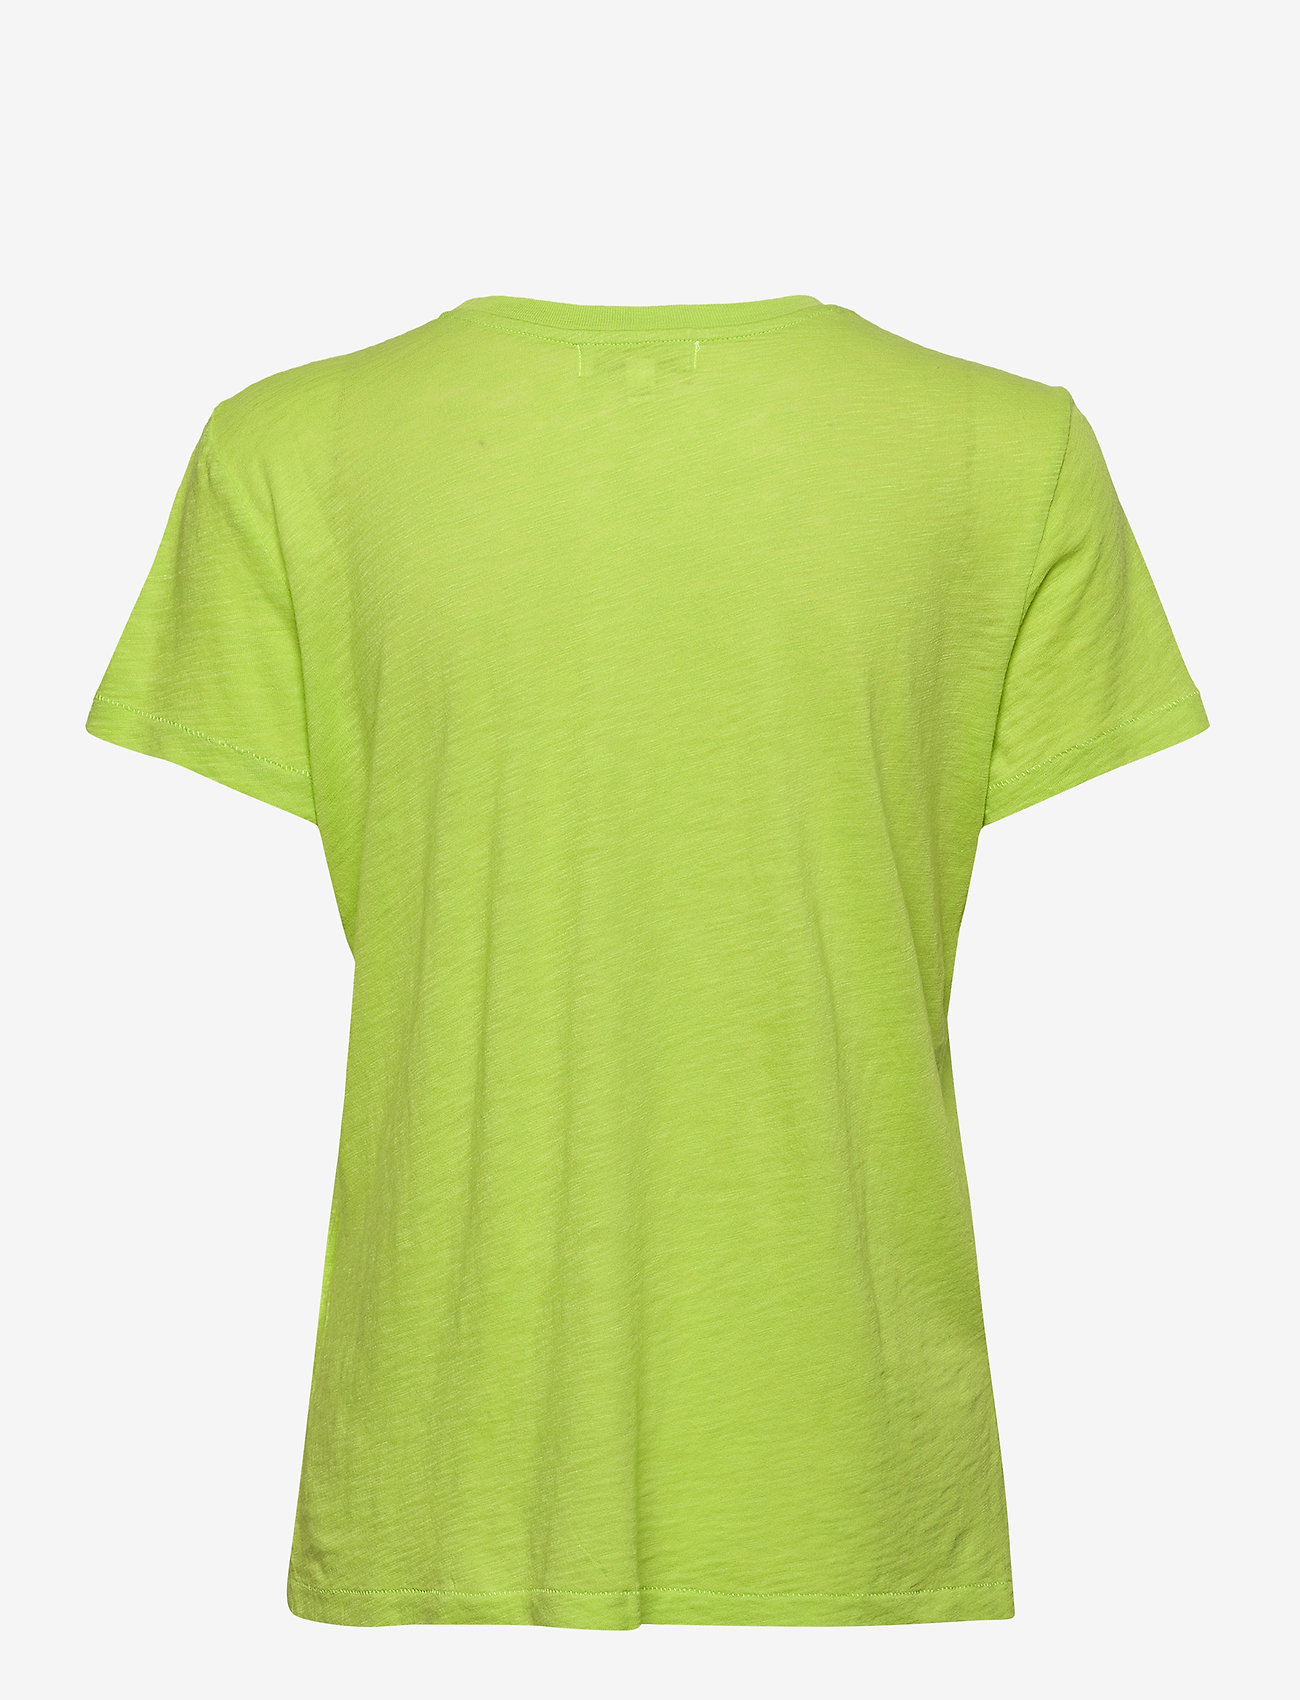 PJ Salvage - s/s shirt - góry - lime green - 1